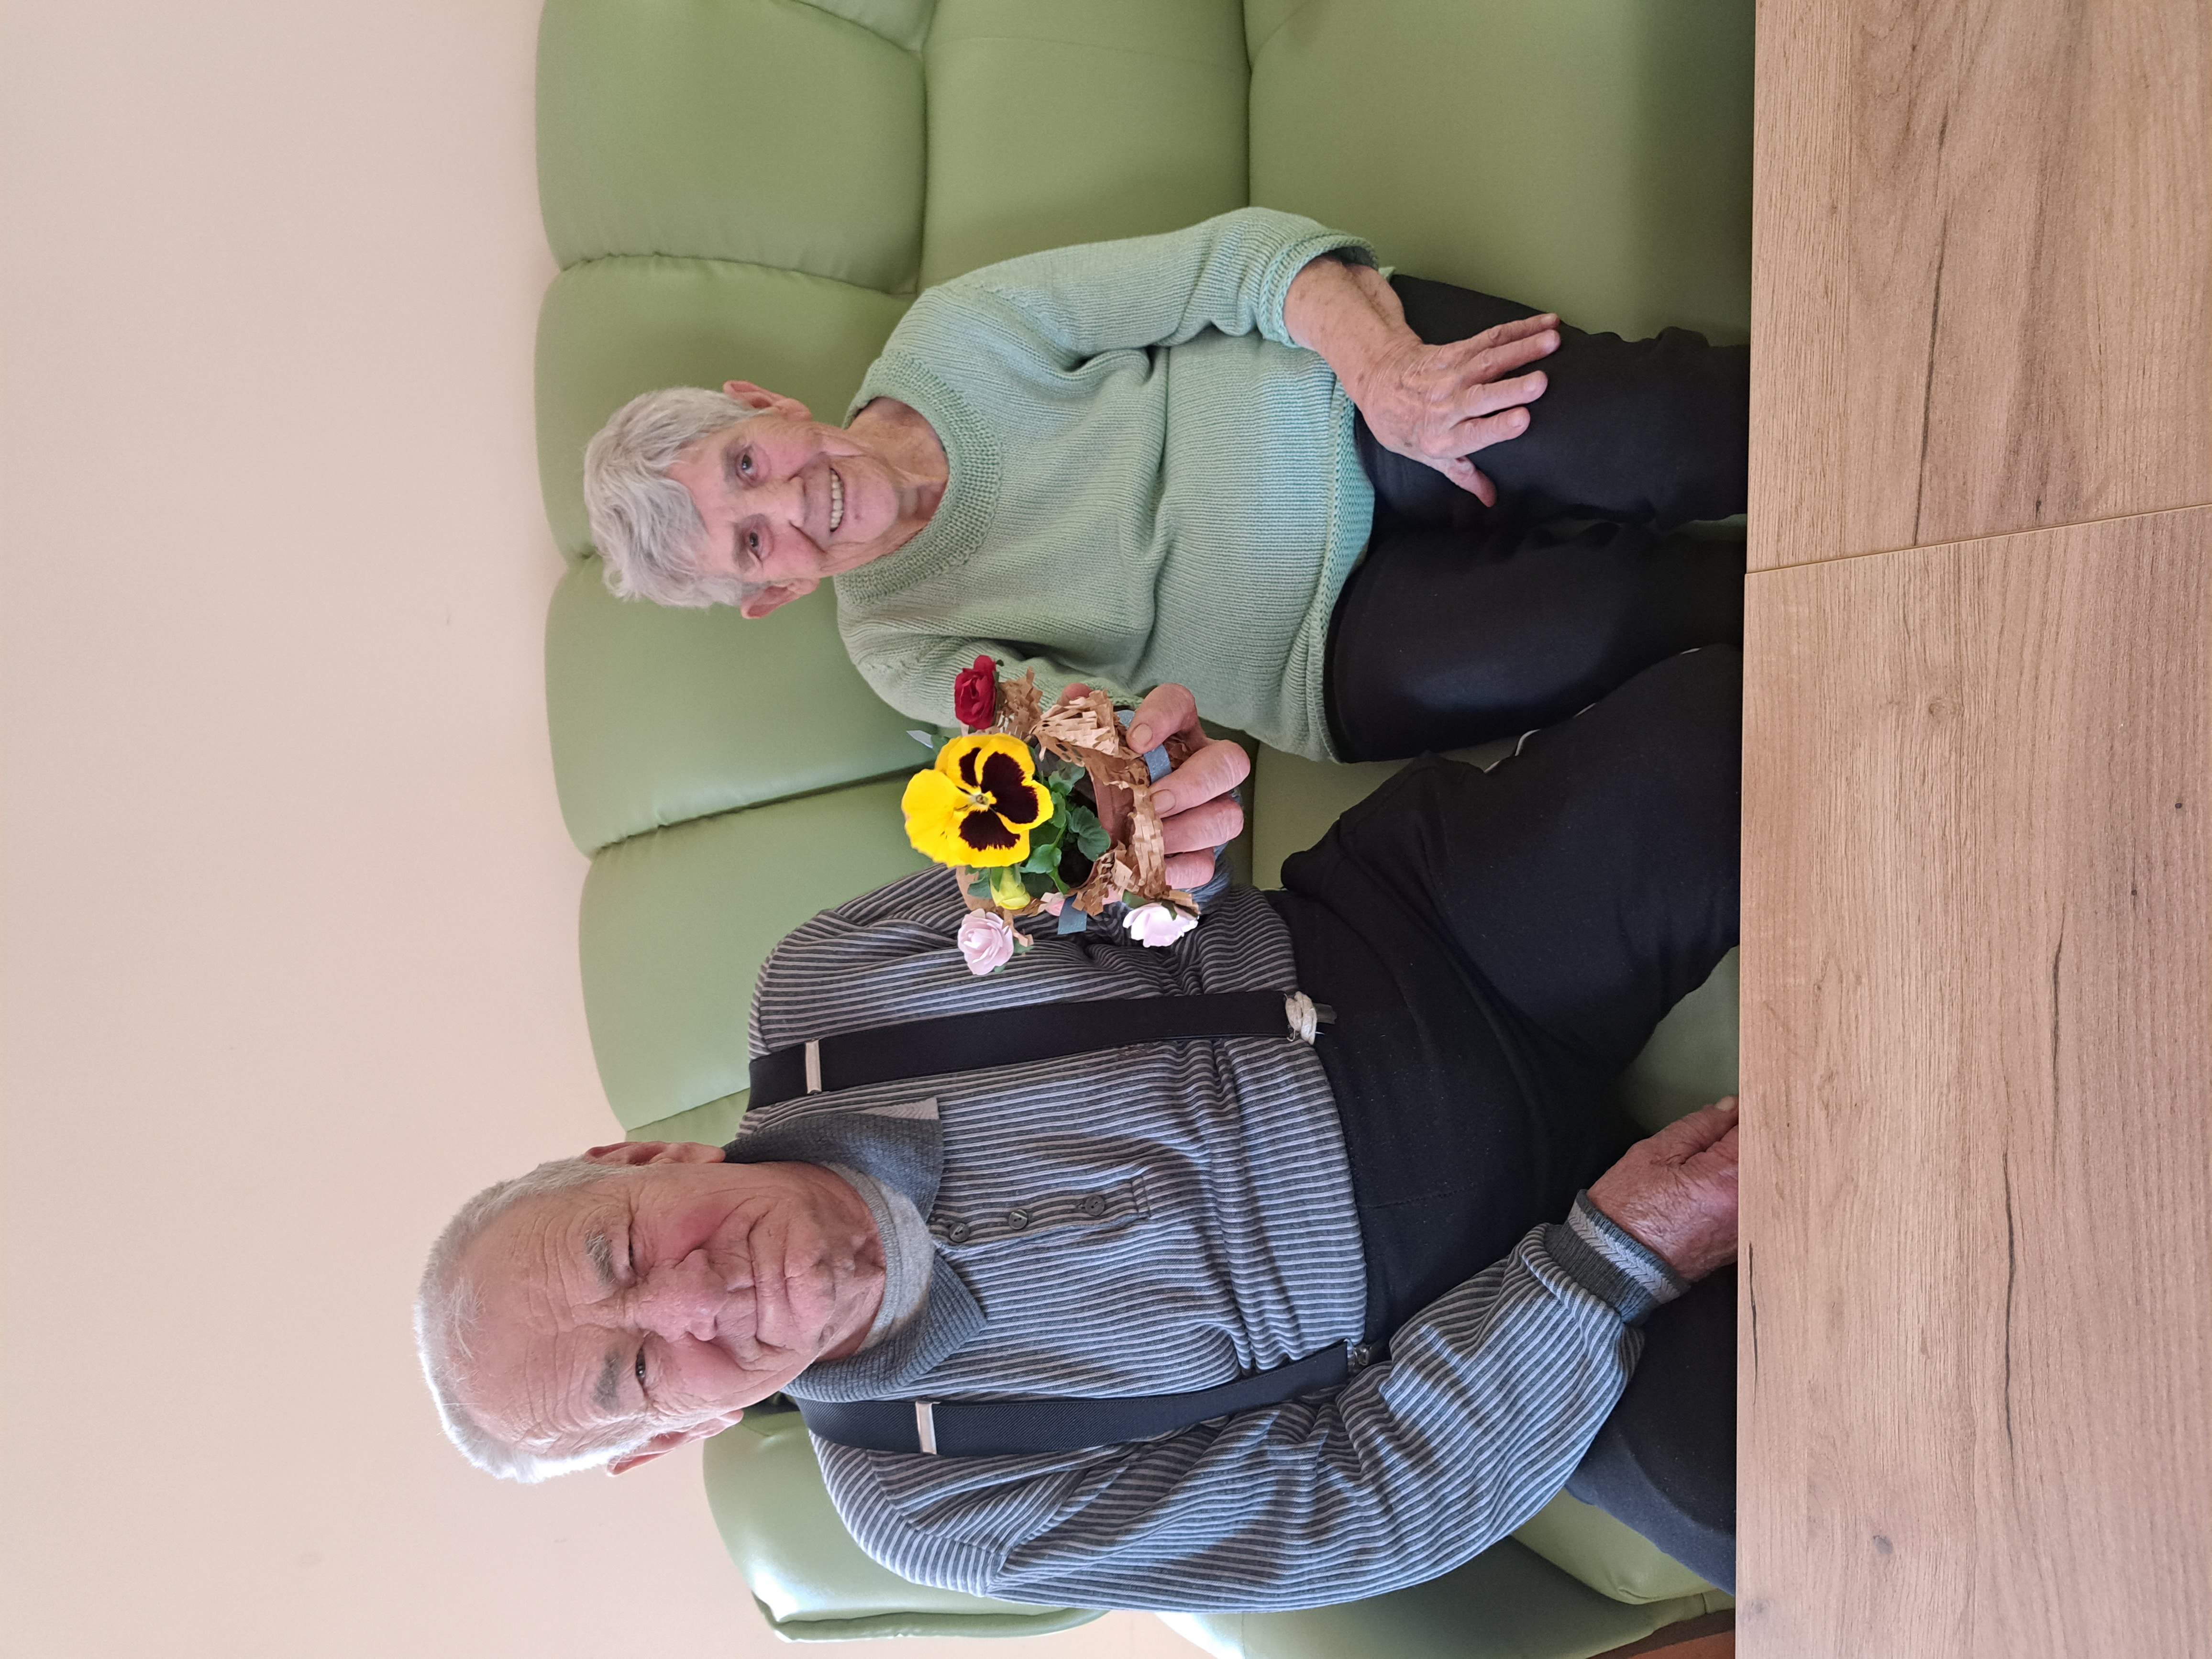 Seniorka wraz z Seniorem siedzi na kanapie, w wyciągniętej przed siebie dłoni trzyma żółtego kwiatka w doniczce